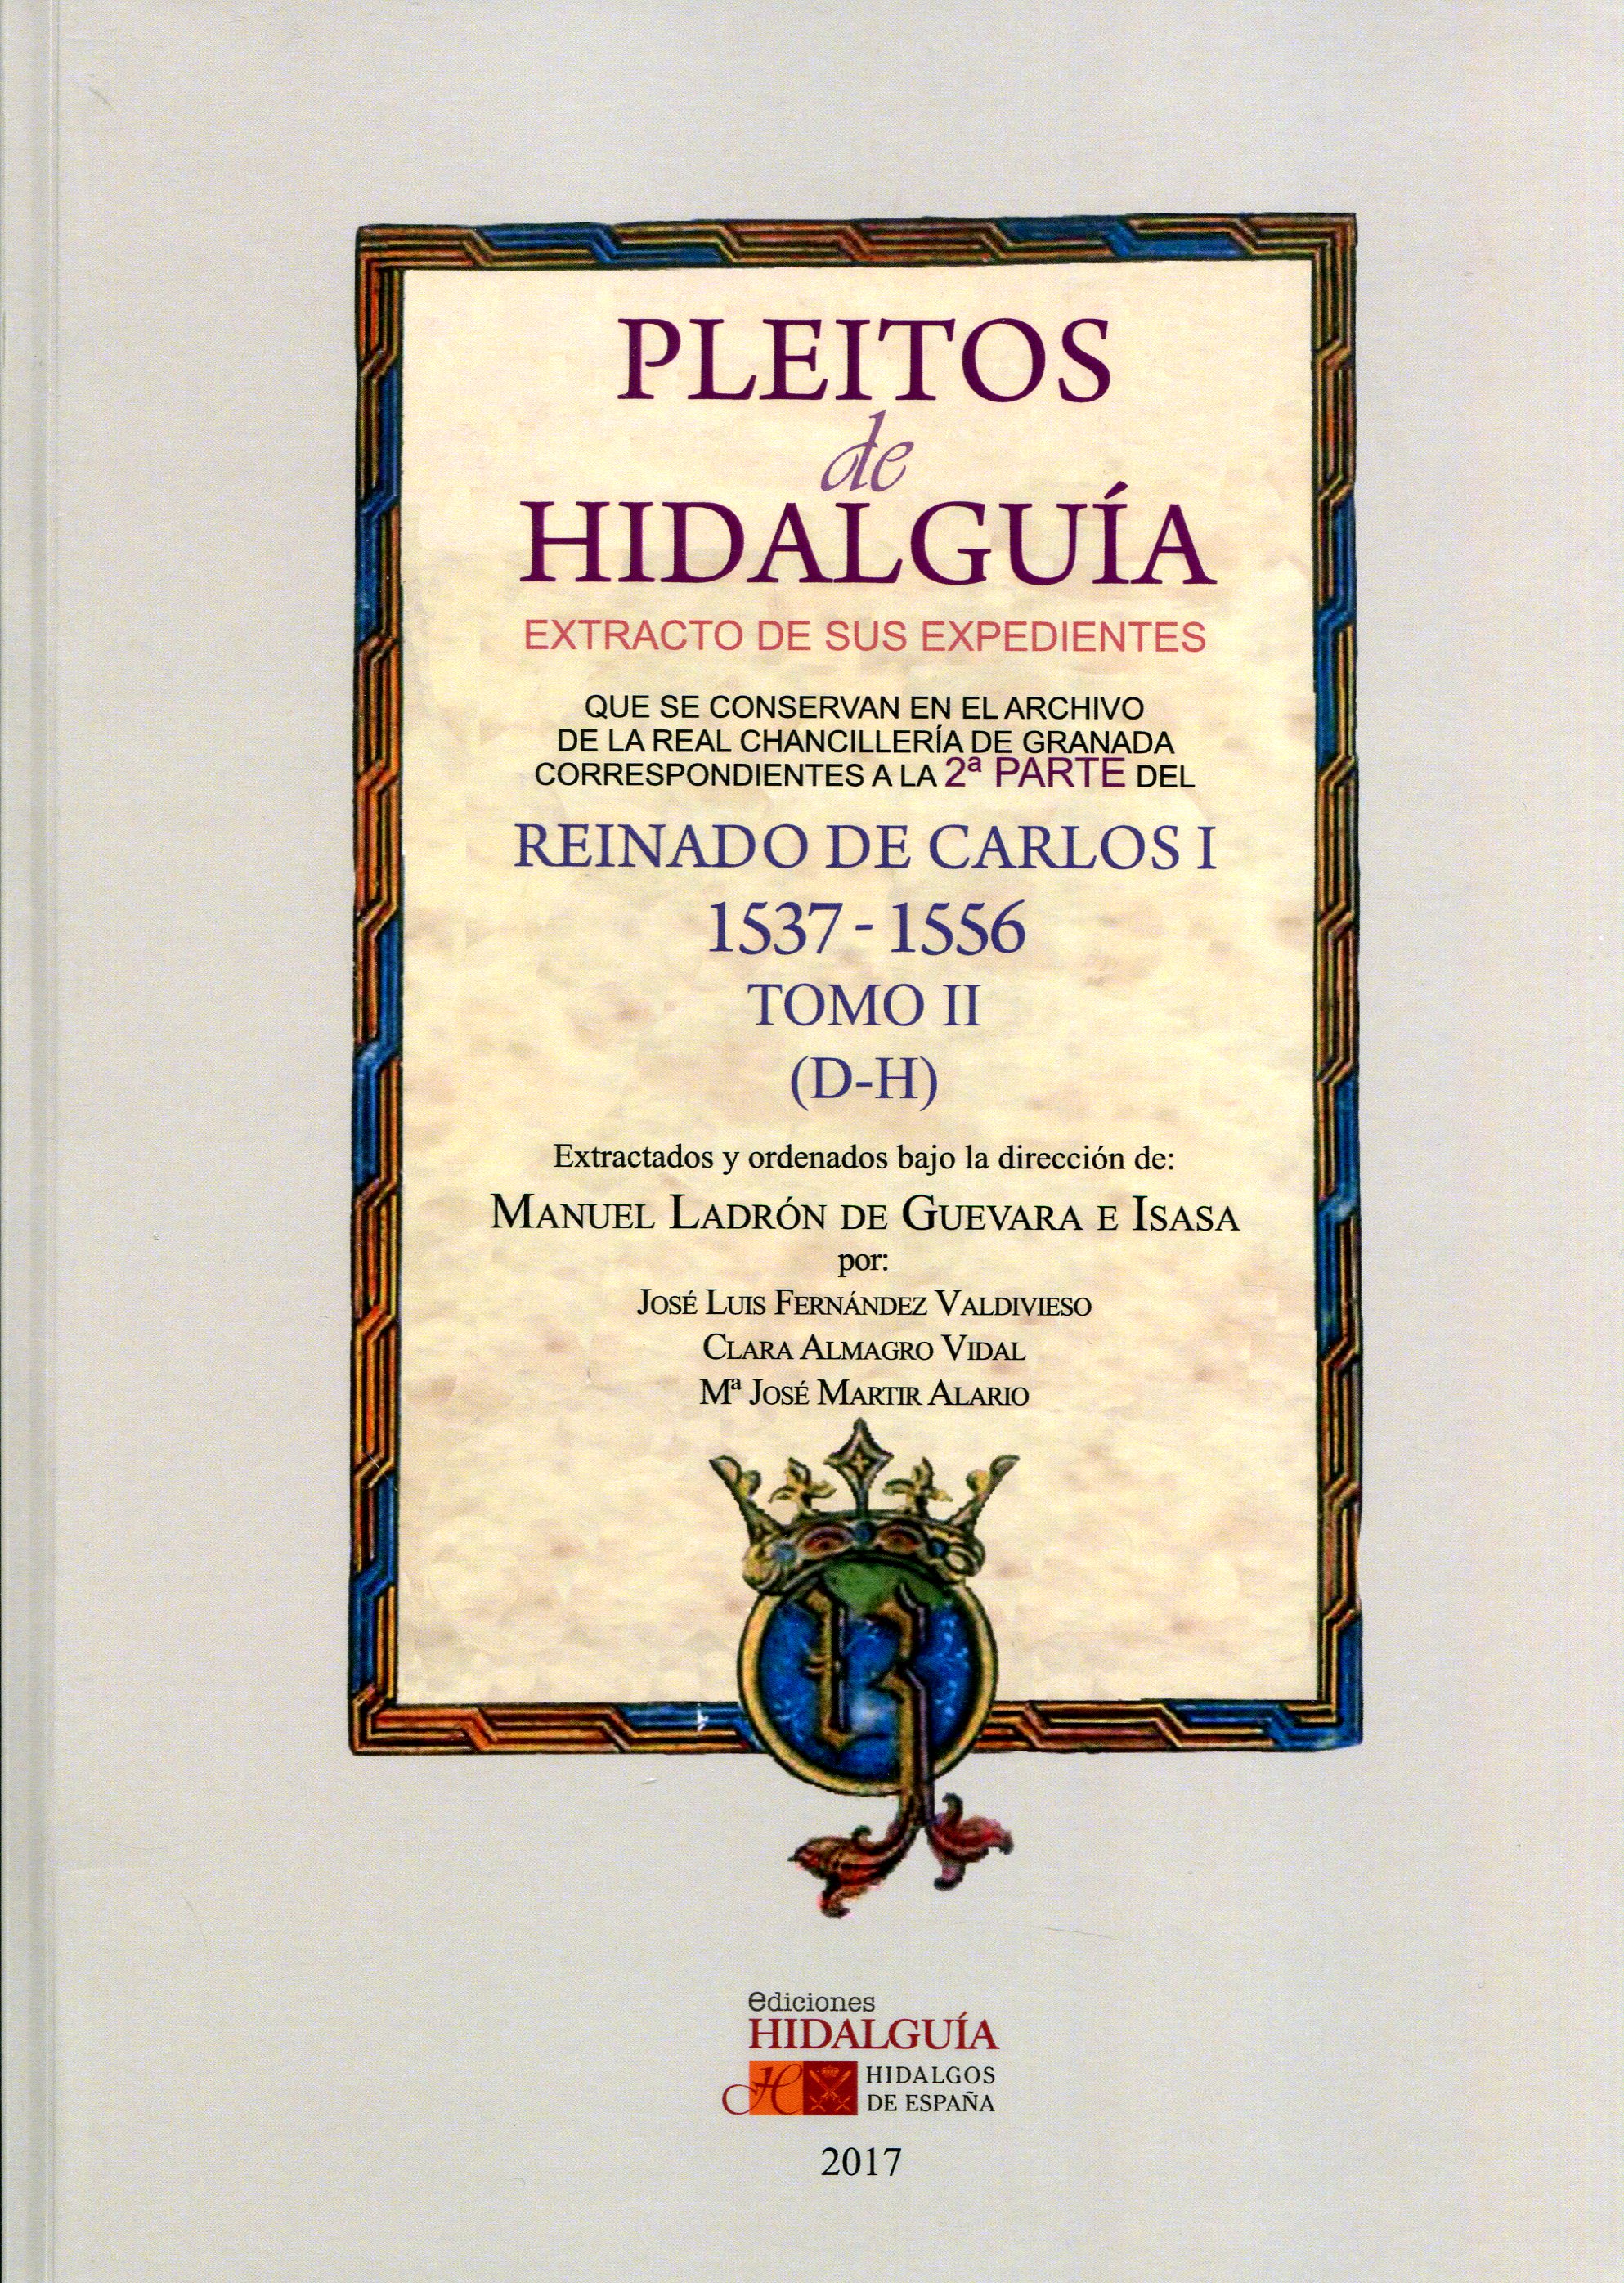 Pleitos de Hidalguía. Extracto de sus expedientes que se conservan en el Archivo de la Real Chancillería de Granada correspondientes a la 2ª parte del reinado de Carlos I 1537-1556 